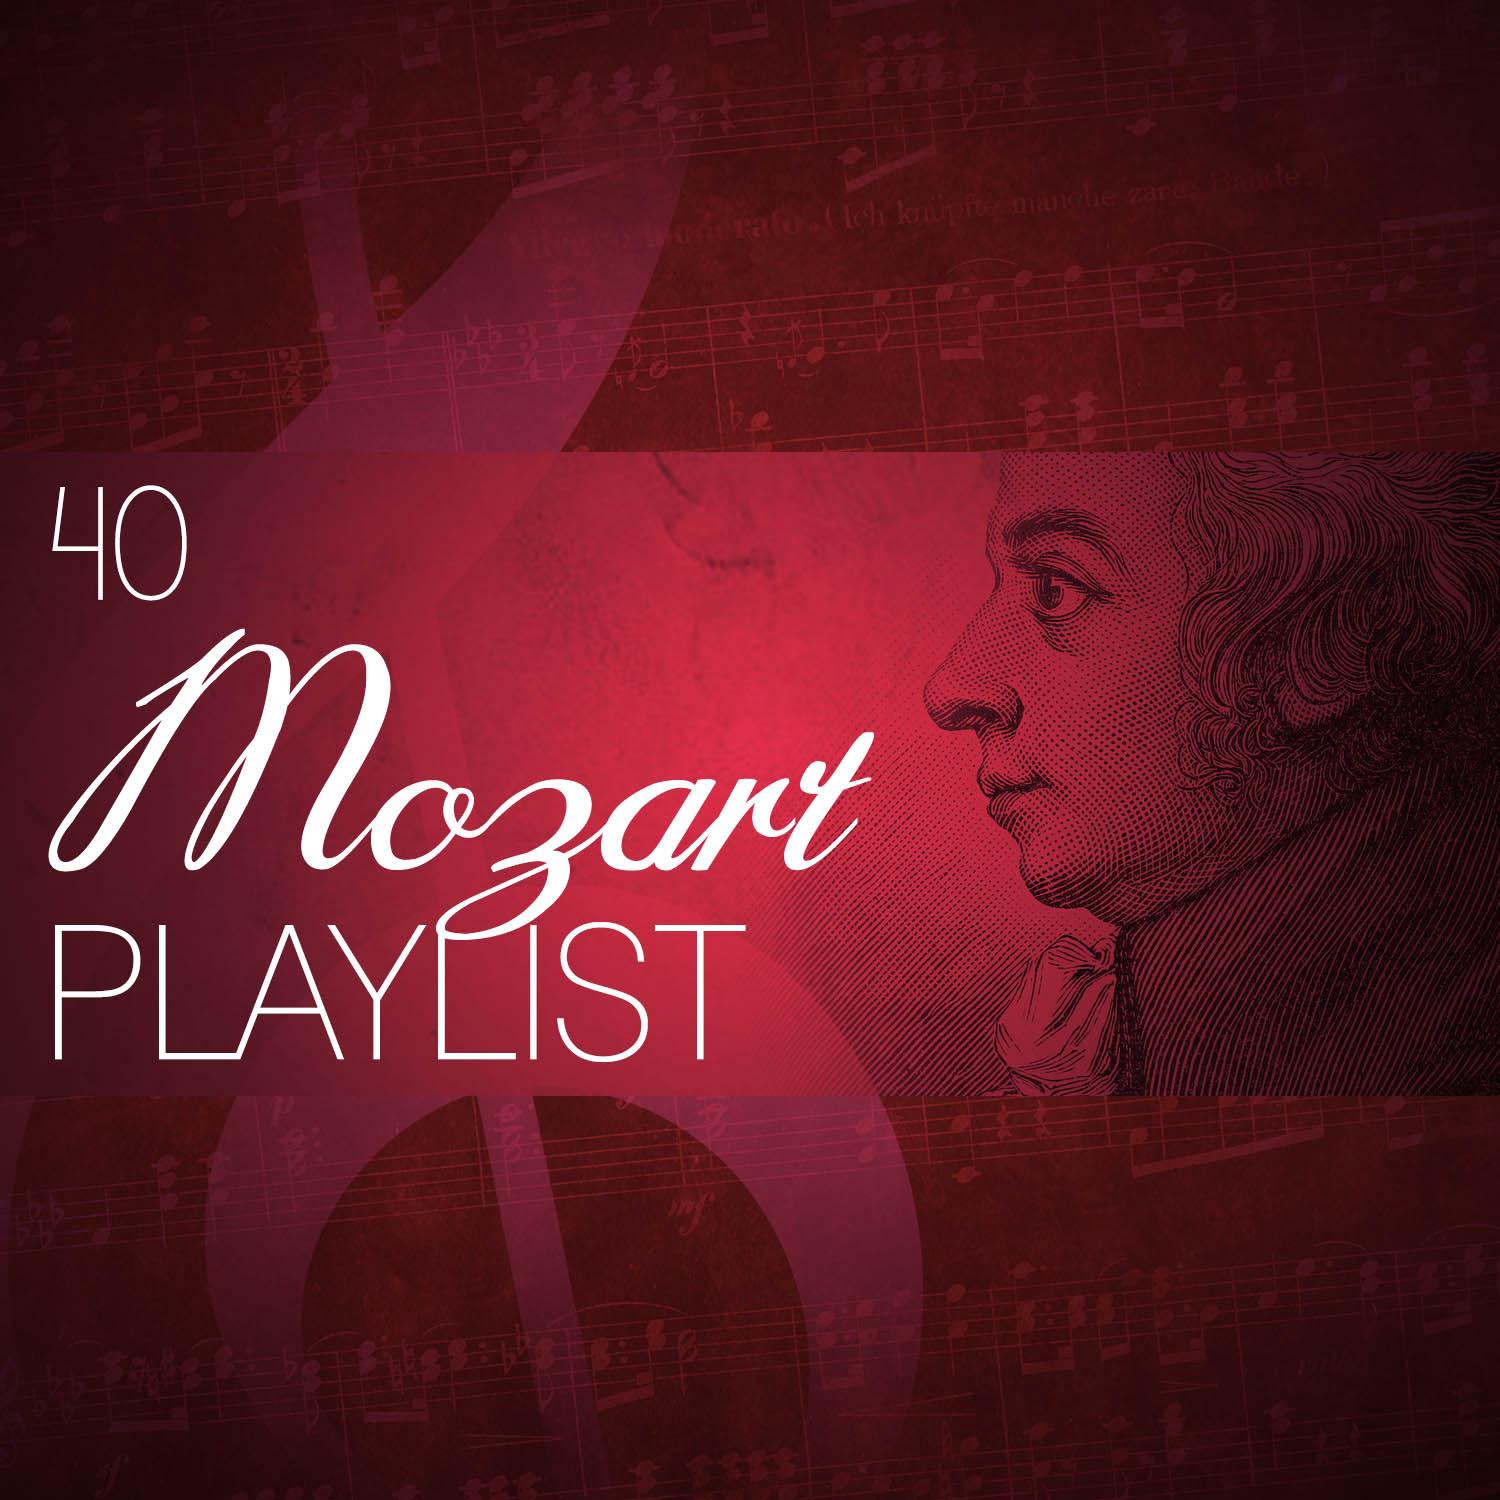 40 Mozart Playlist